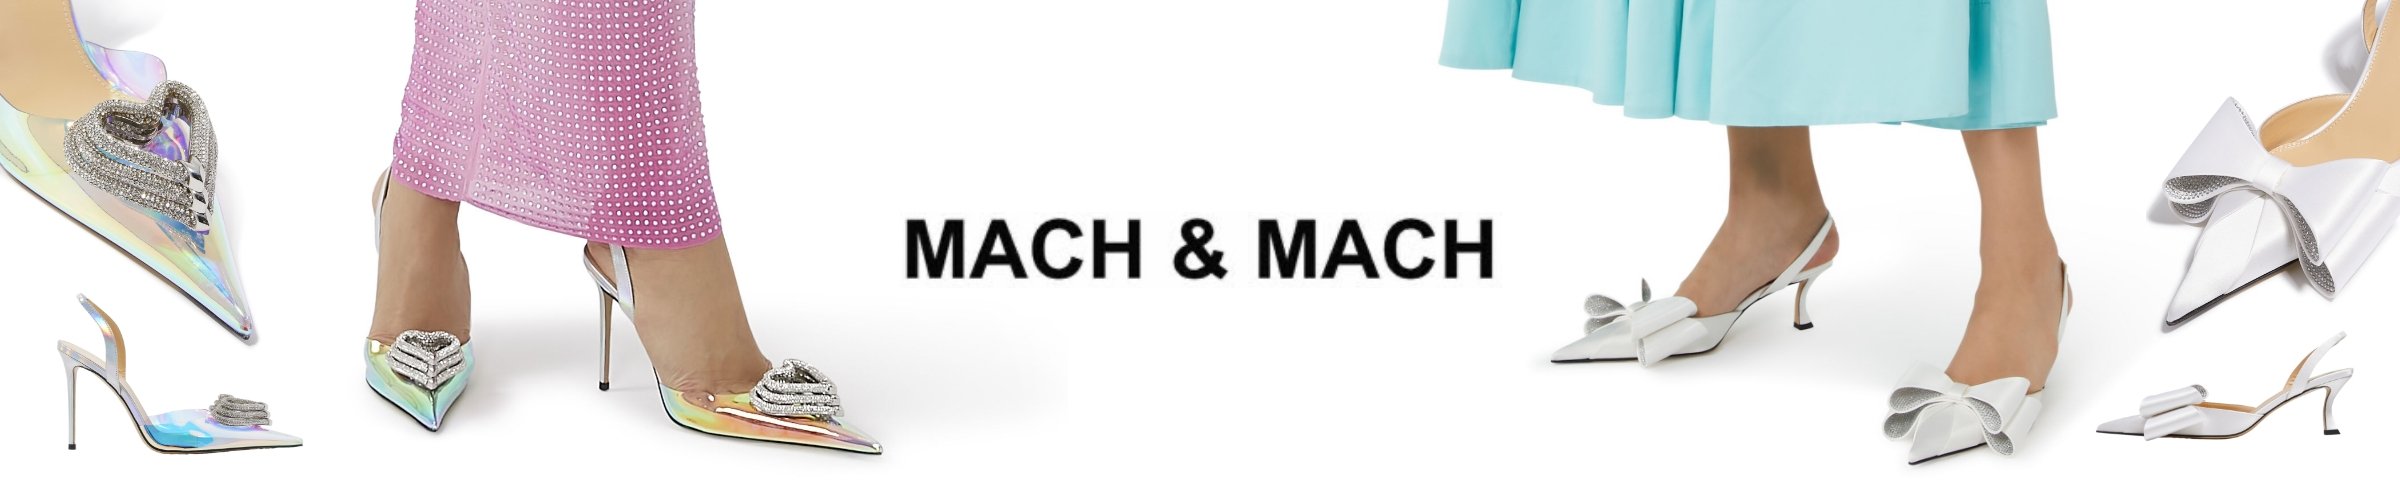 mach&mach-banner